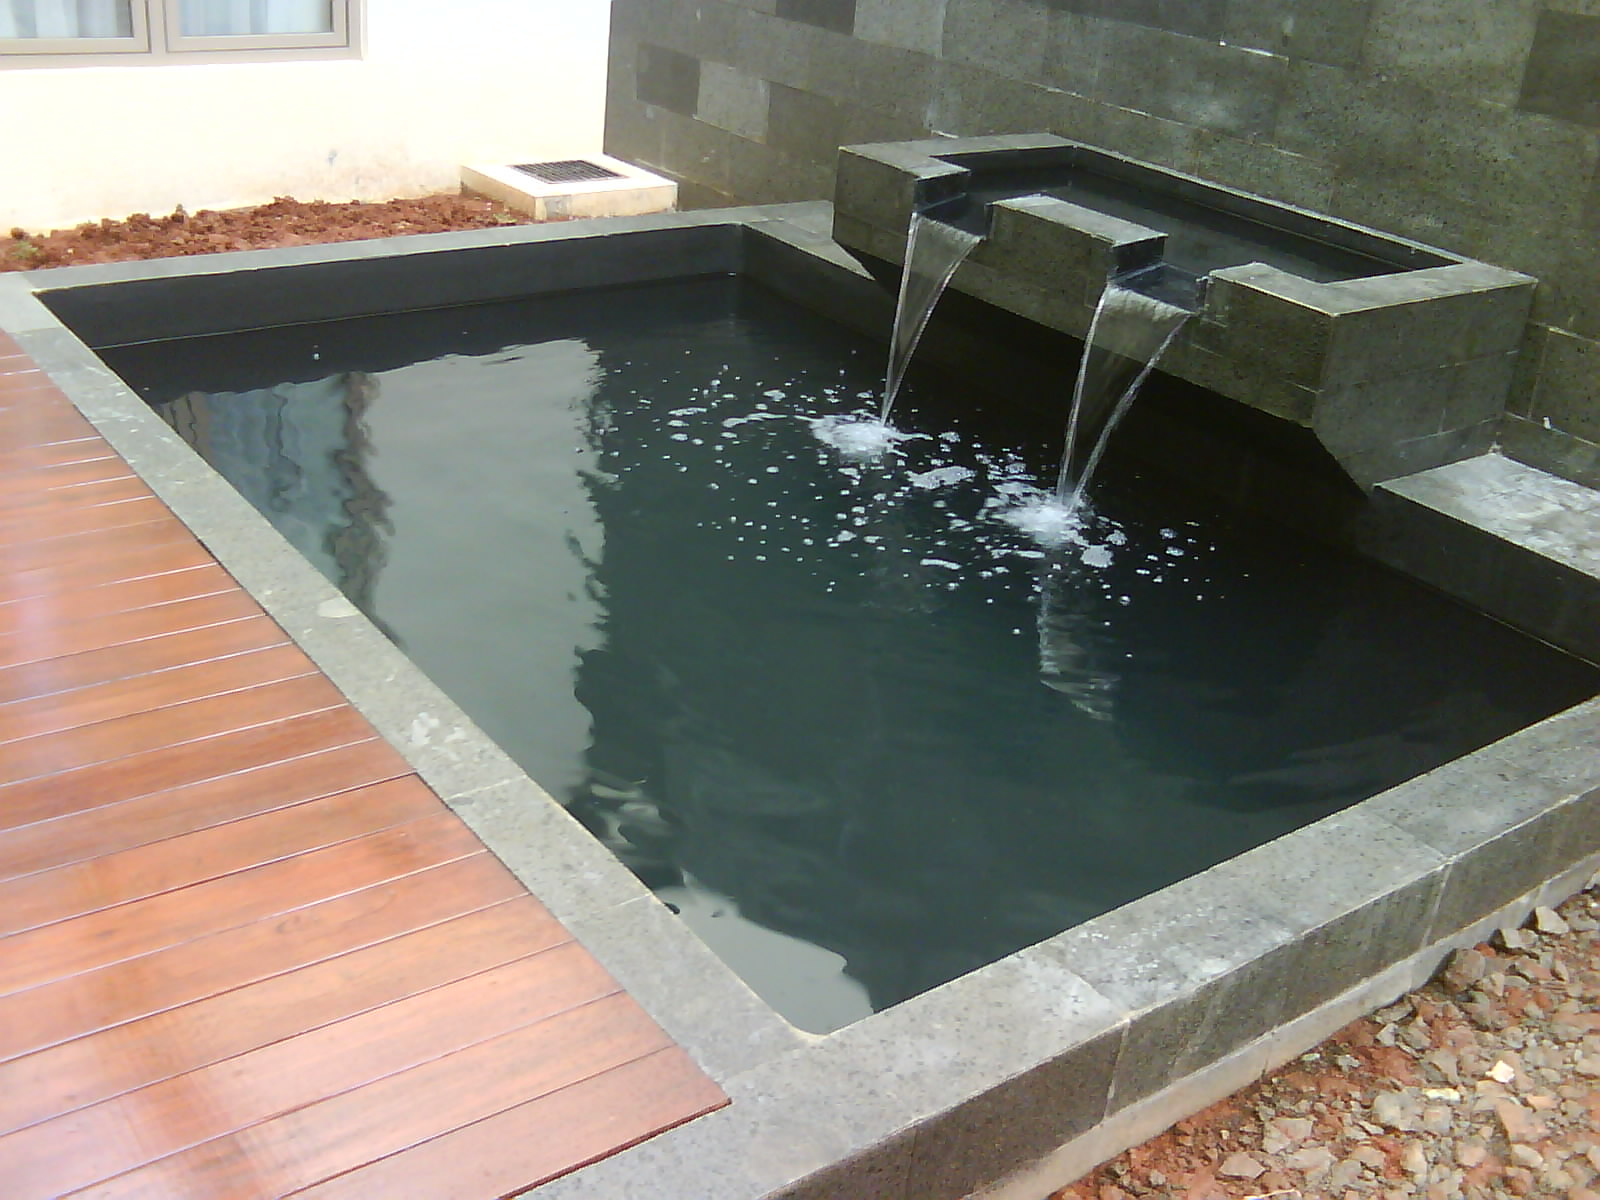 Kolam minimalis ini milik Bp. Kom Pol Nasution di perumahan Rafles 